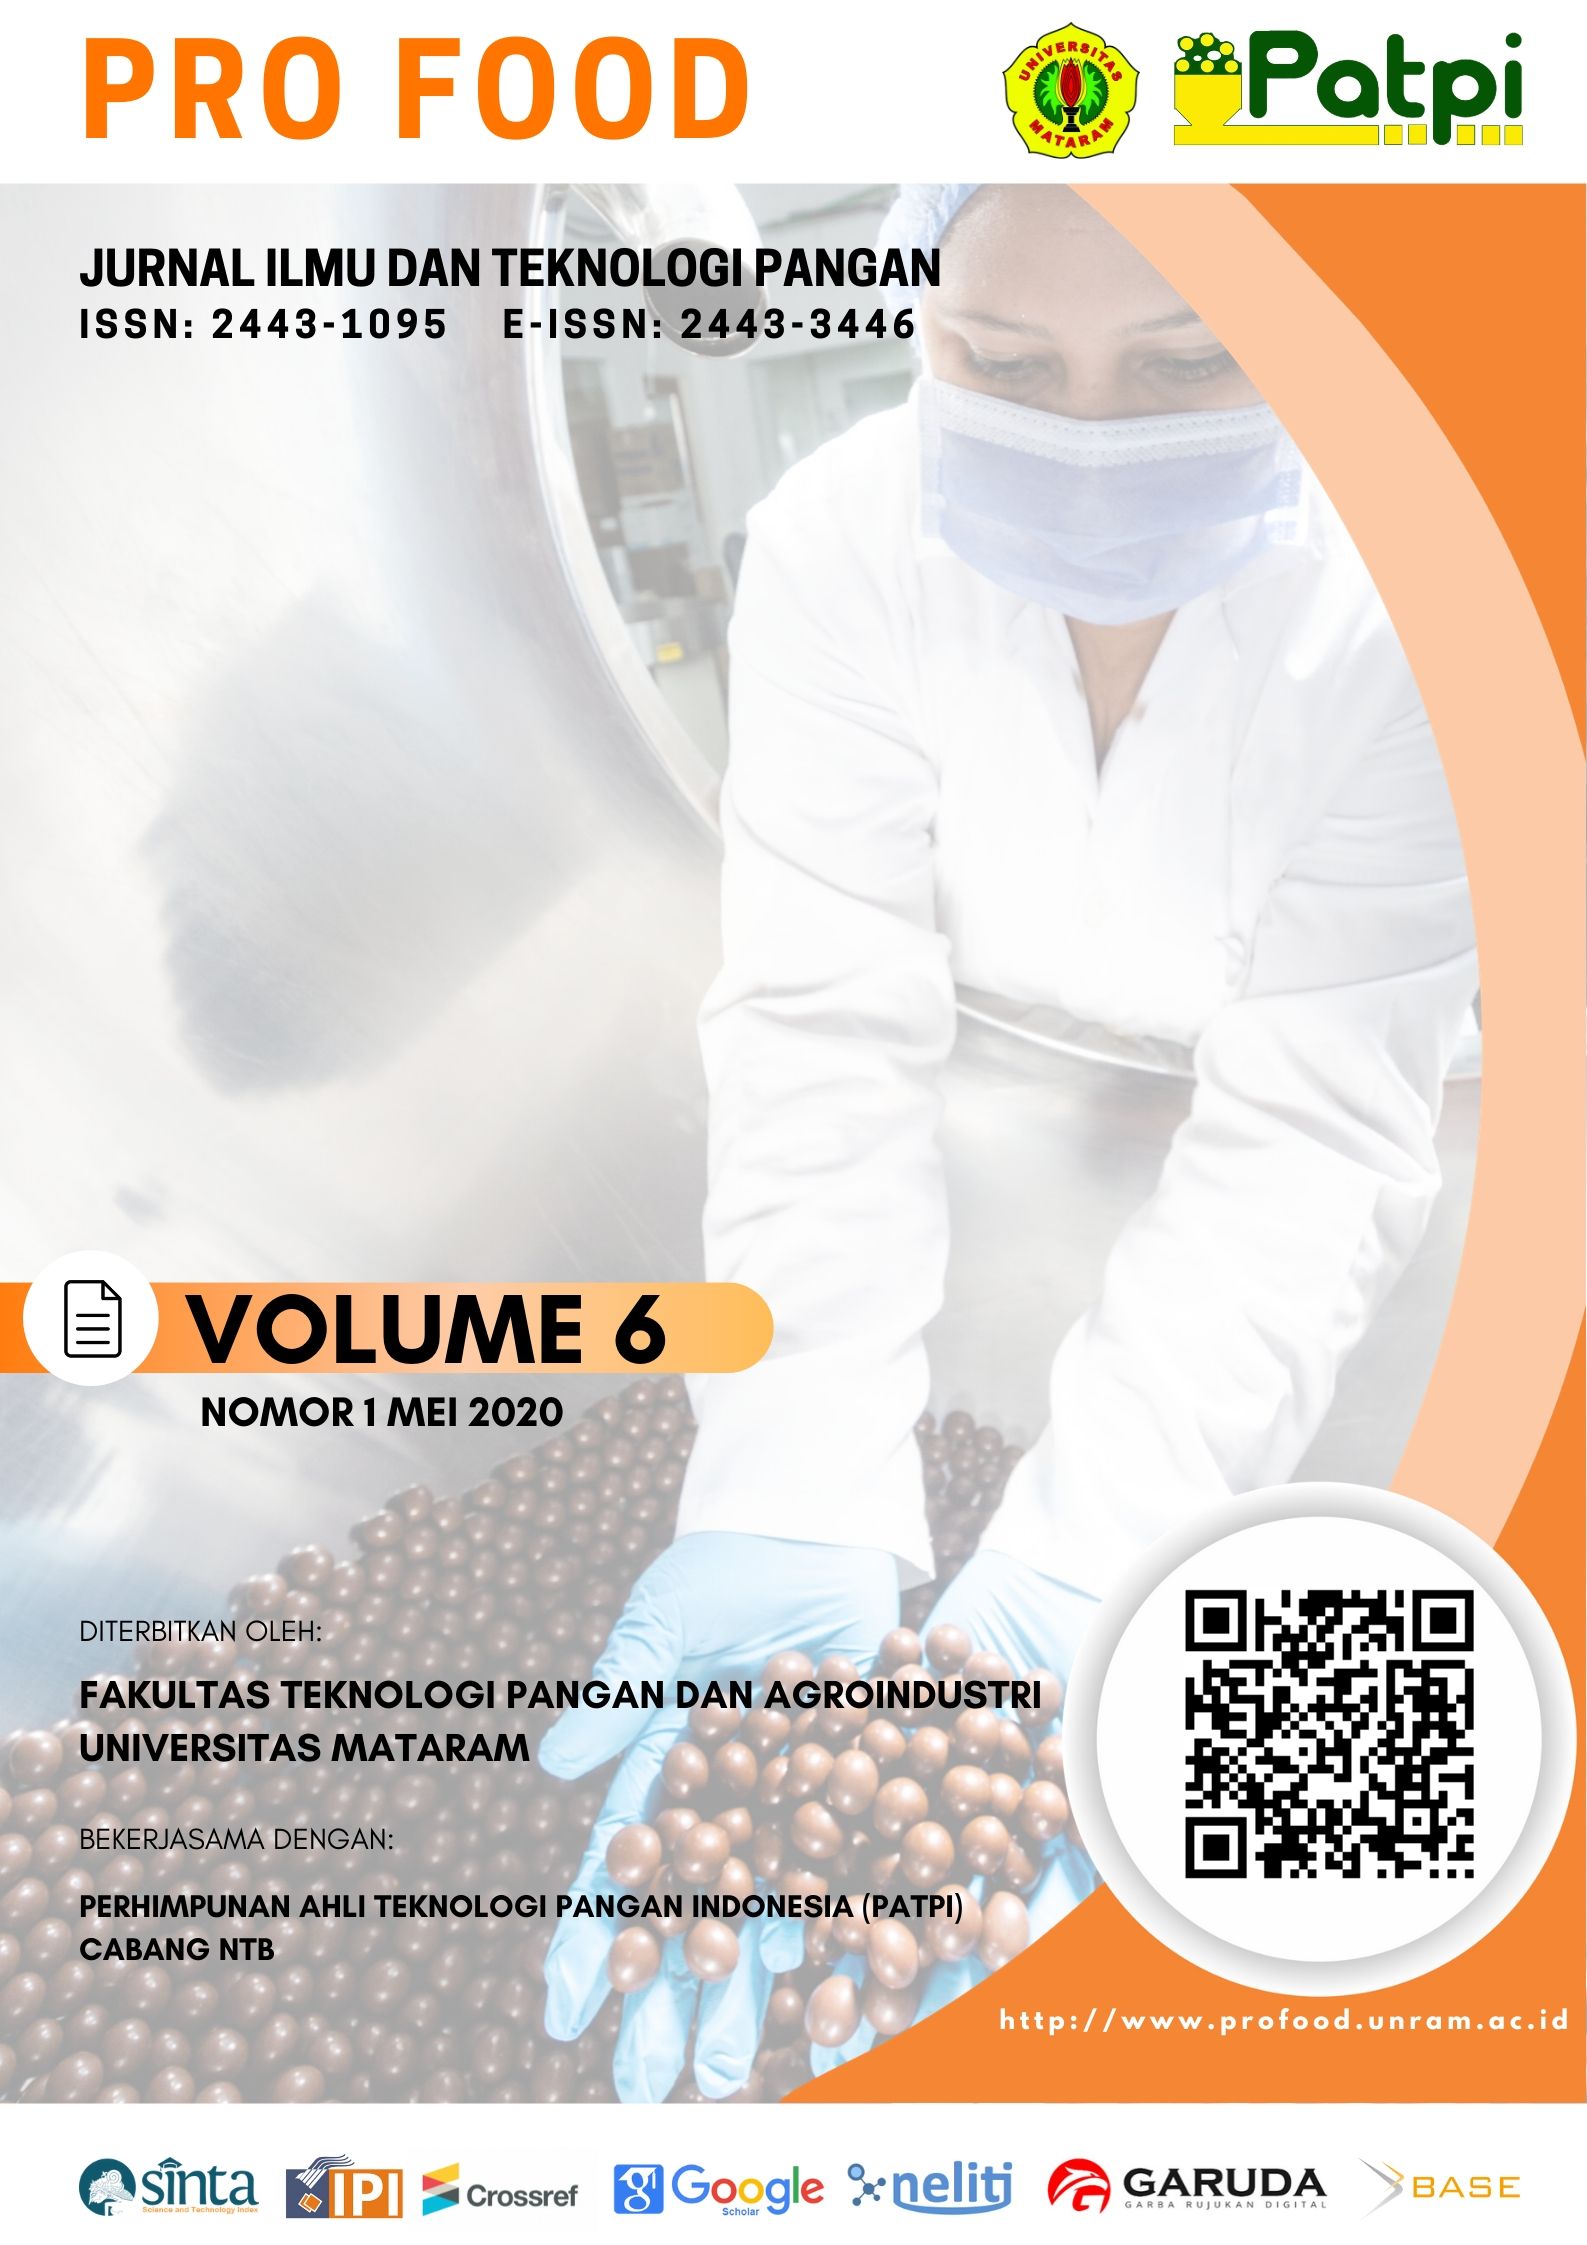 					Lihat Vol 6 No 1 (2020): Pro Food (Jurnal Ilmu dan Teknologi Pangan)
				